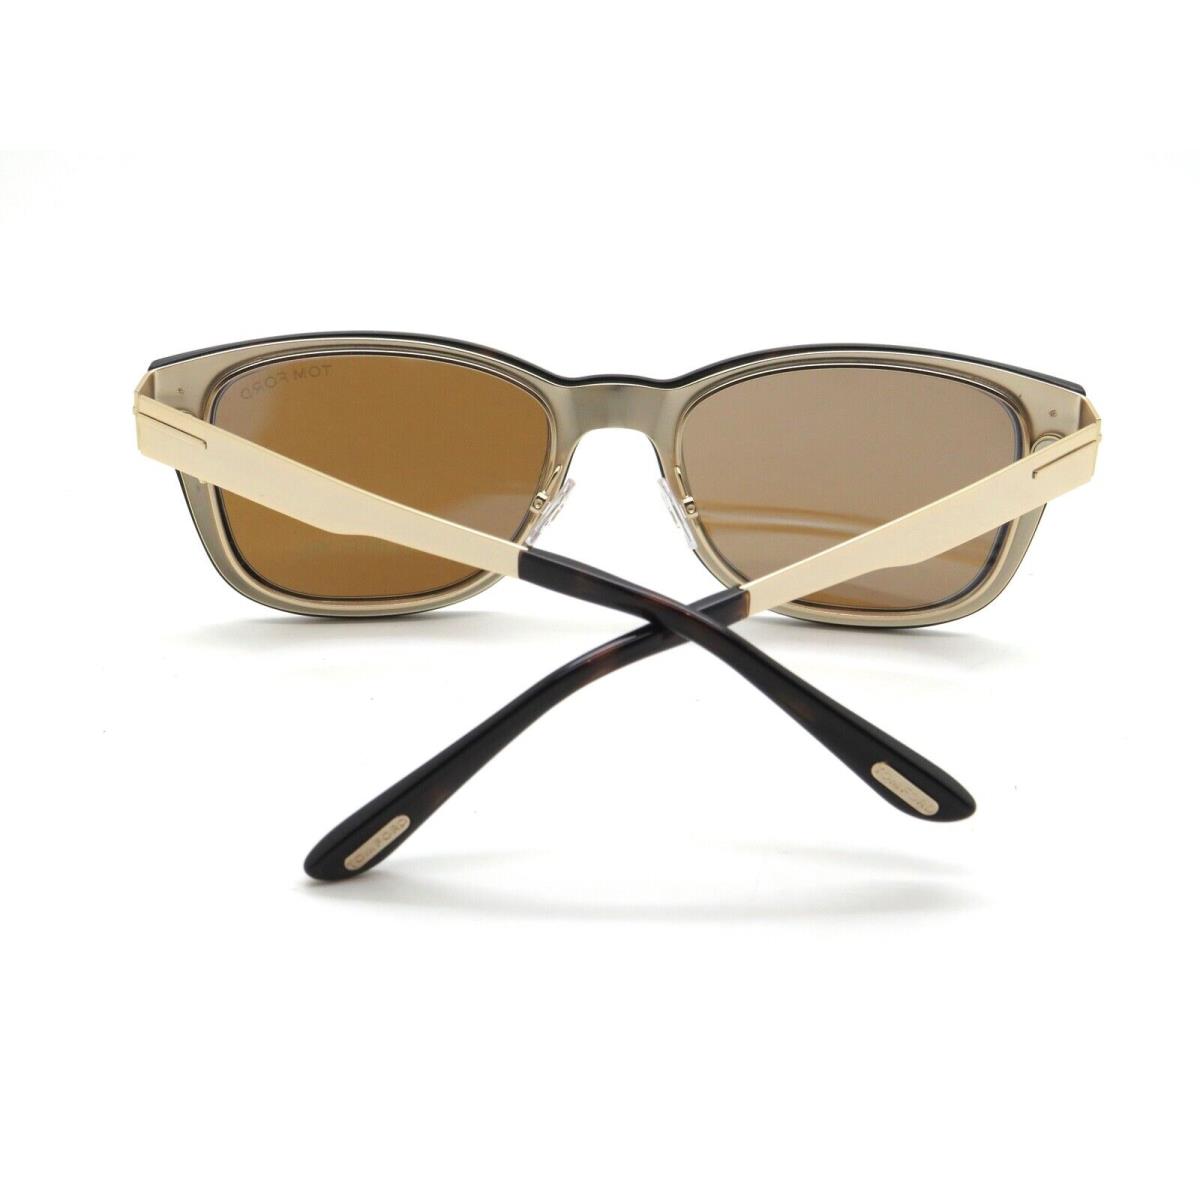 Tom Ford eyeglasses  - Shiny Gold Frame 2